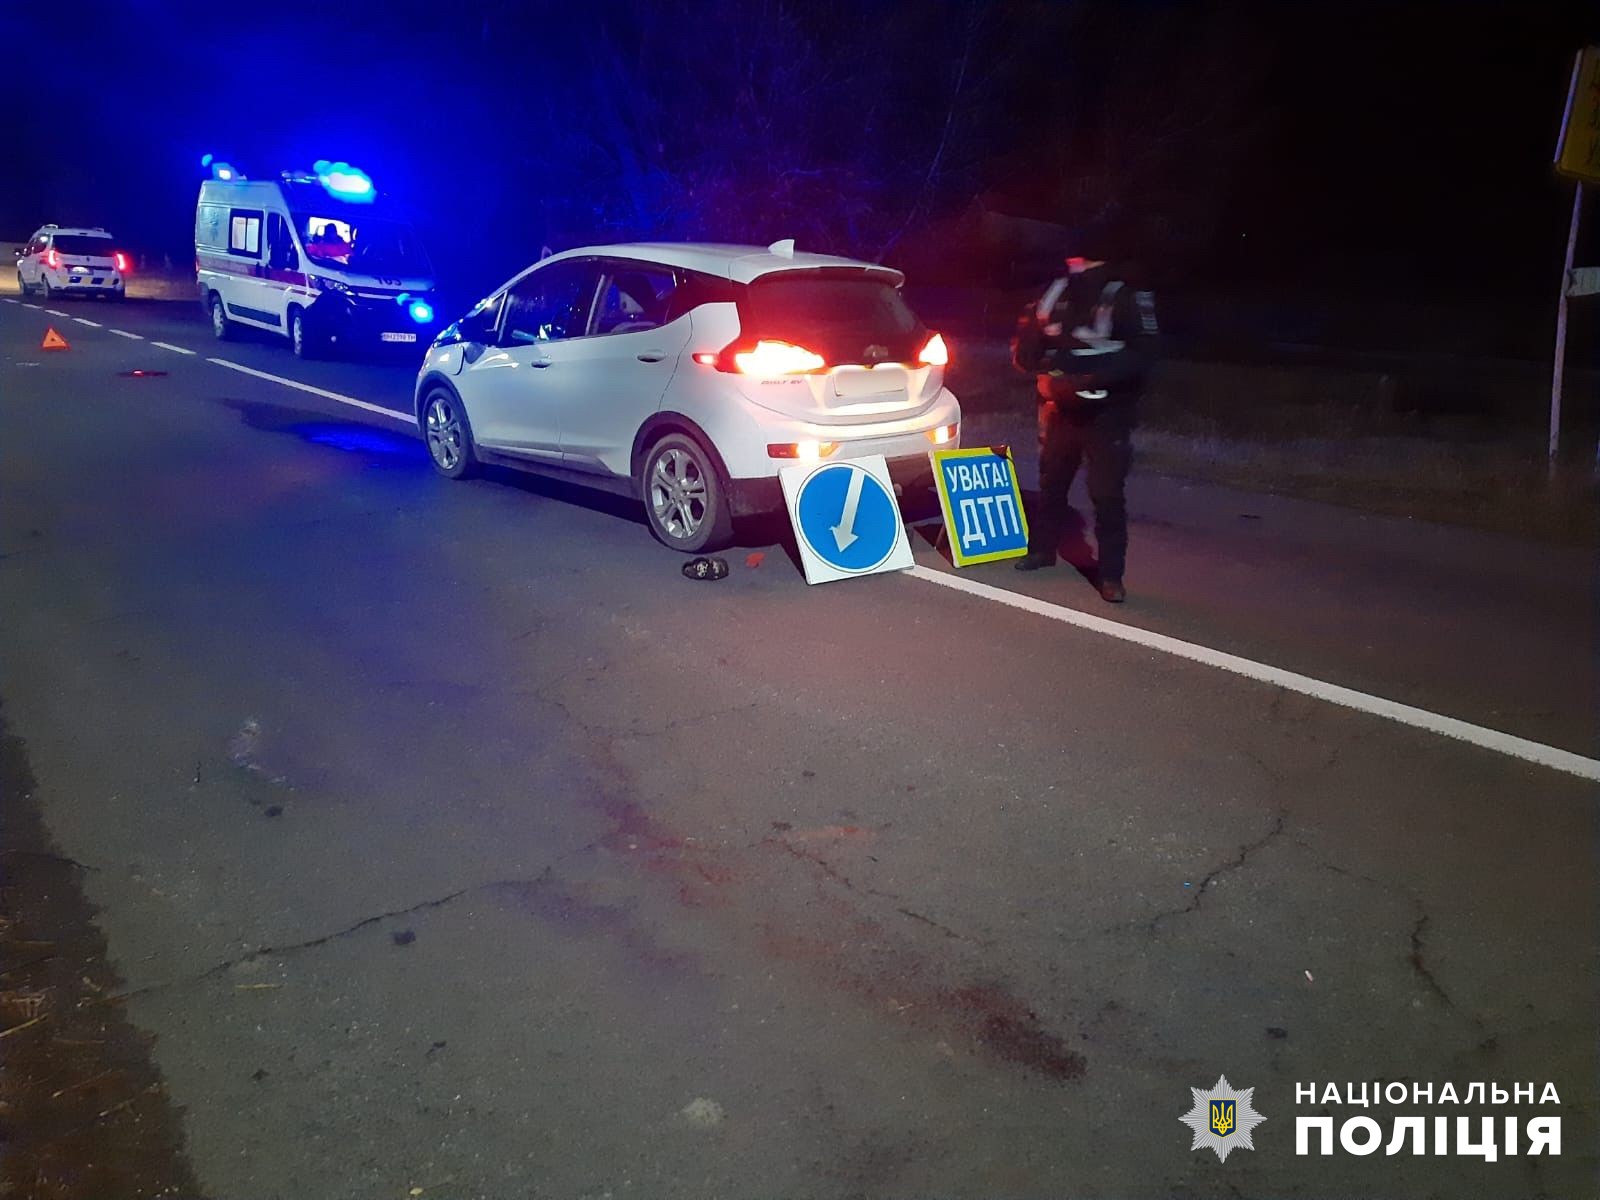 Перебегал дорогу и попал под колеса авто: в Белгород-Днестровском районе произошло смертельное ДТП